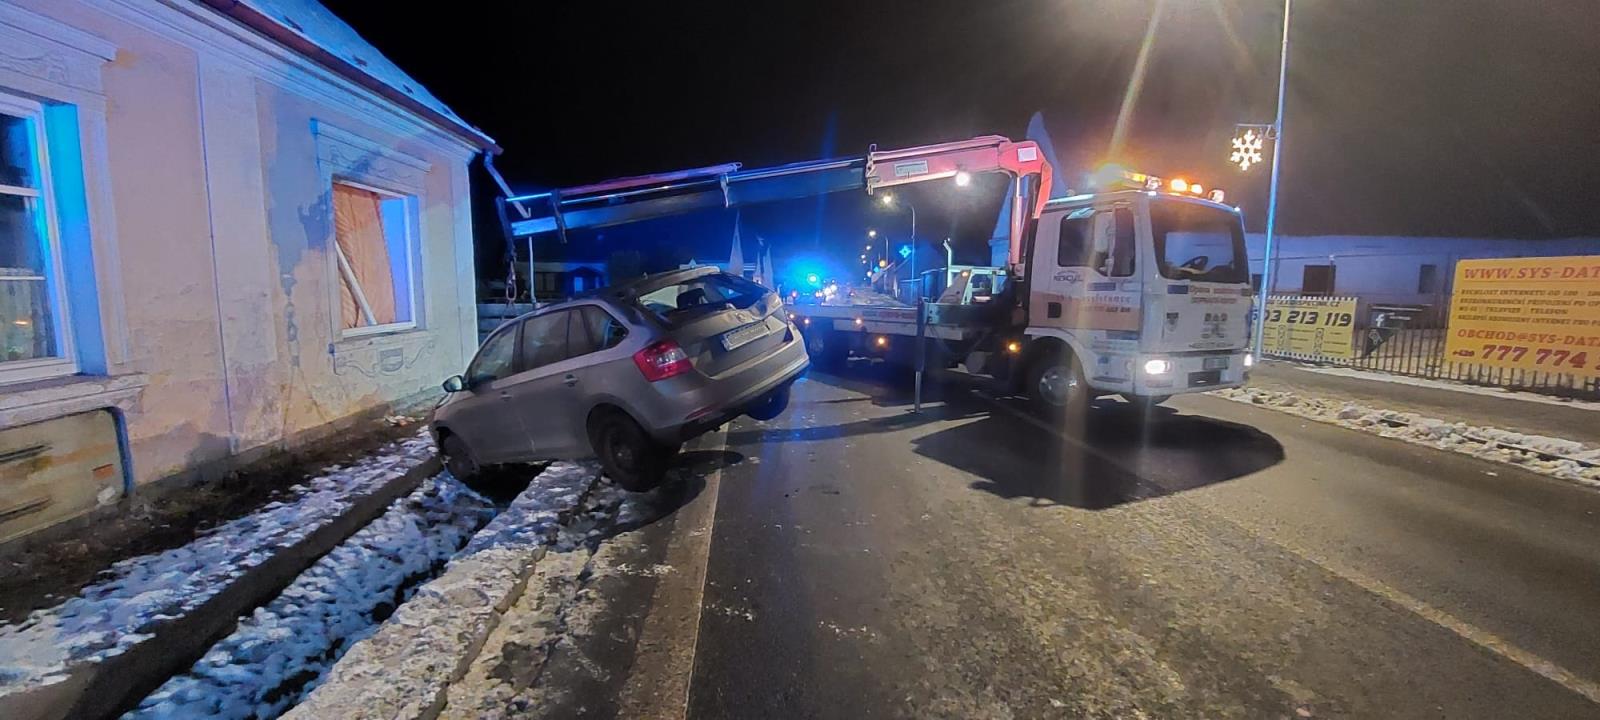 Dopravní nehoda OA do domu, Planá nad Lužnicí - 11. 12. 2021 (3).jpg